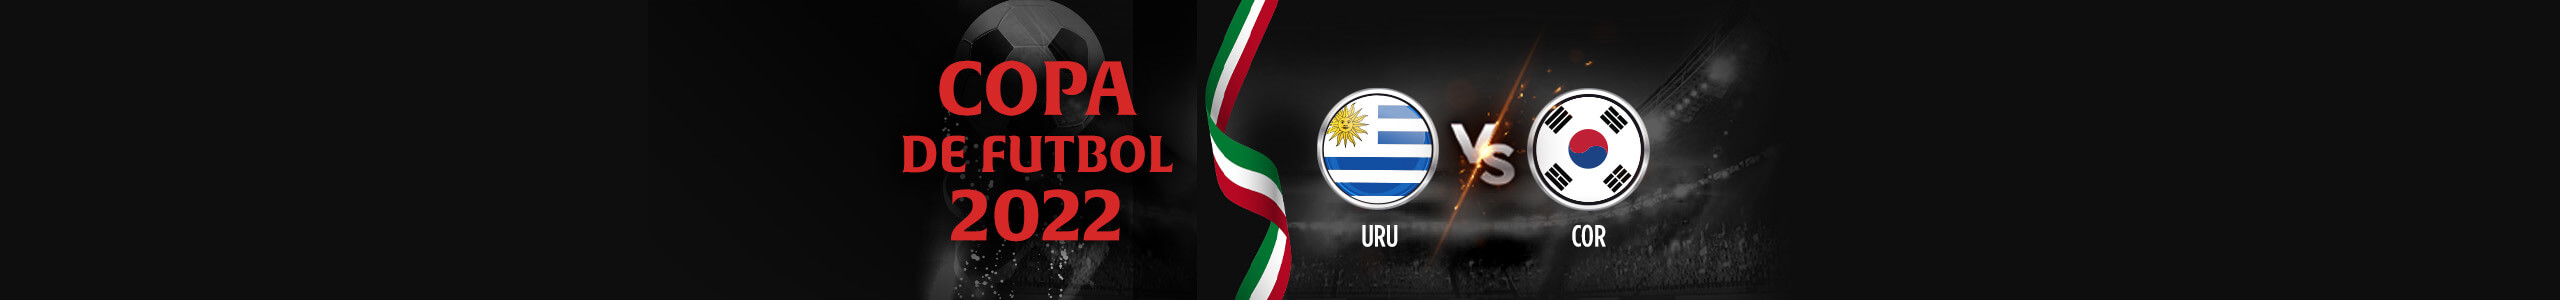 Copa Mundial 2022 - Uruguay vs Korea del Sur